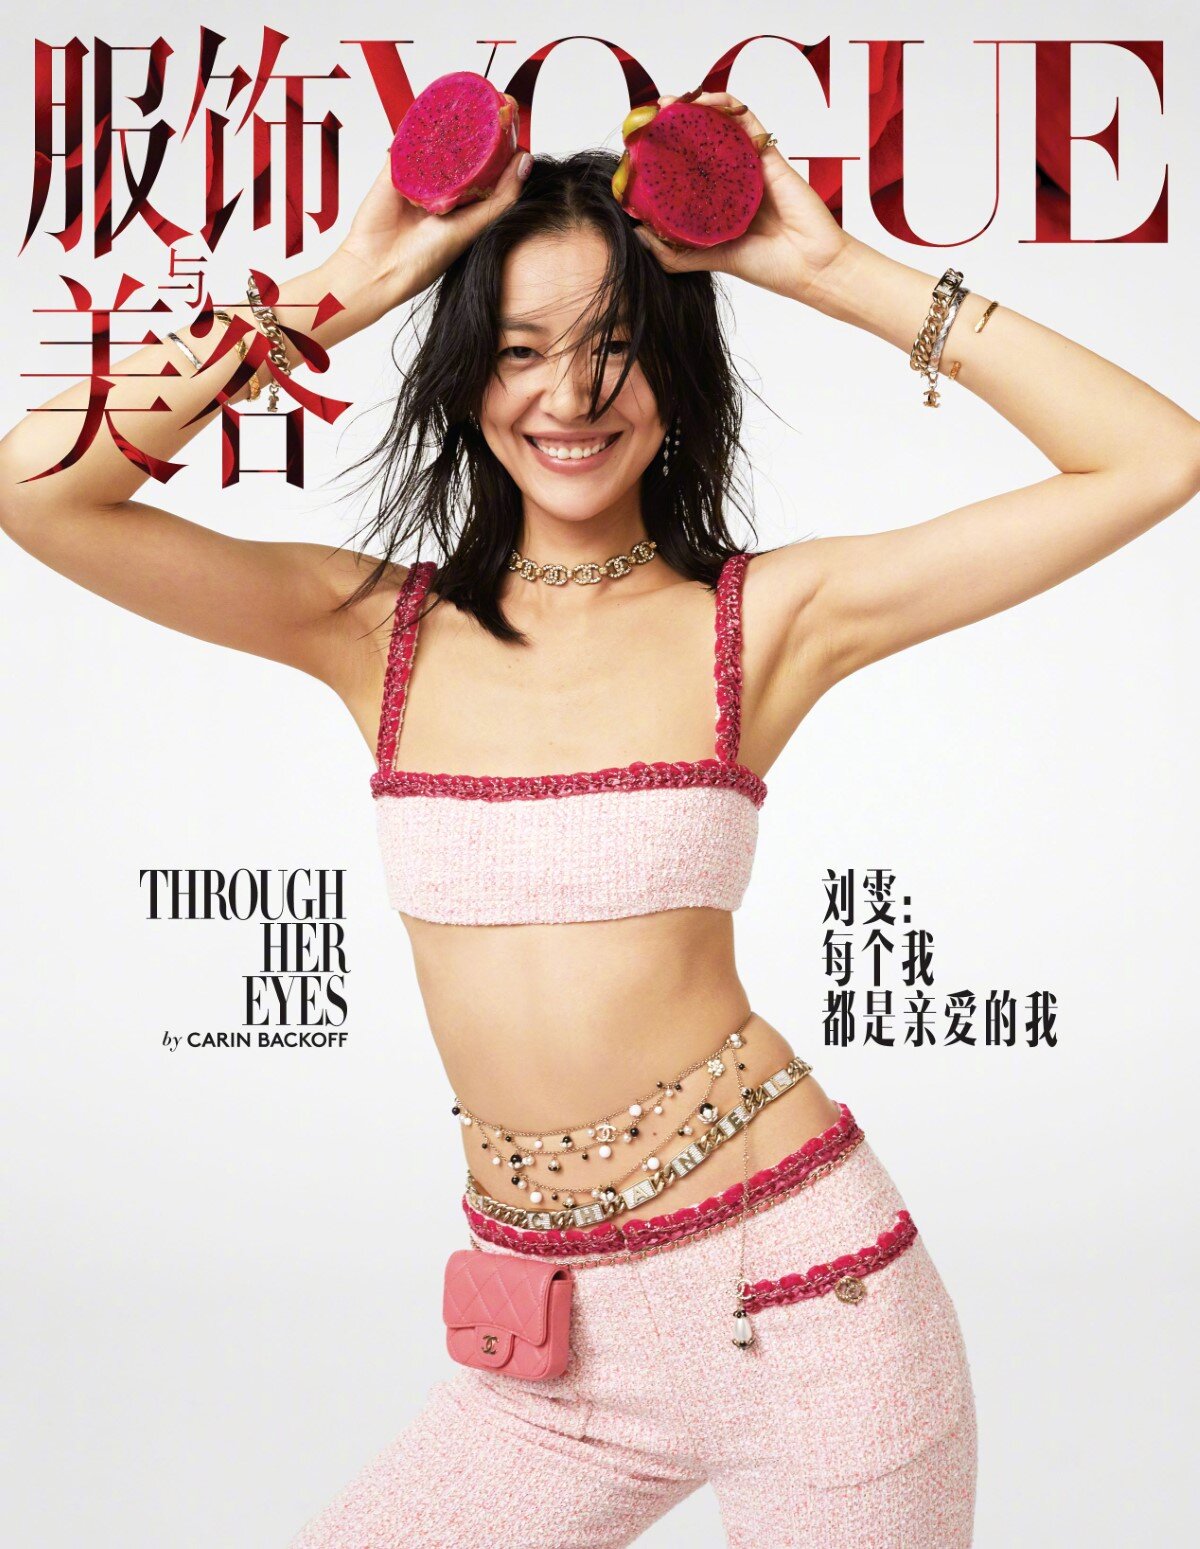 Carin Backoff by Carin Backoff for Vogue China Nov 2020 (4).jpg